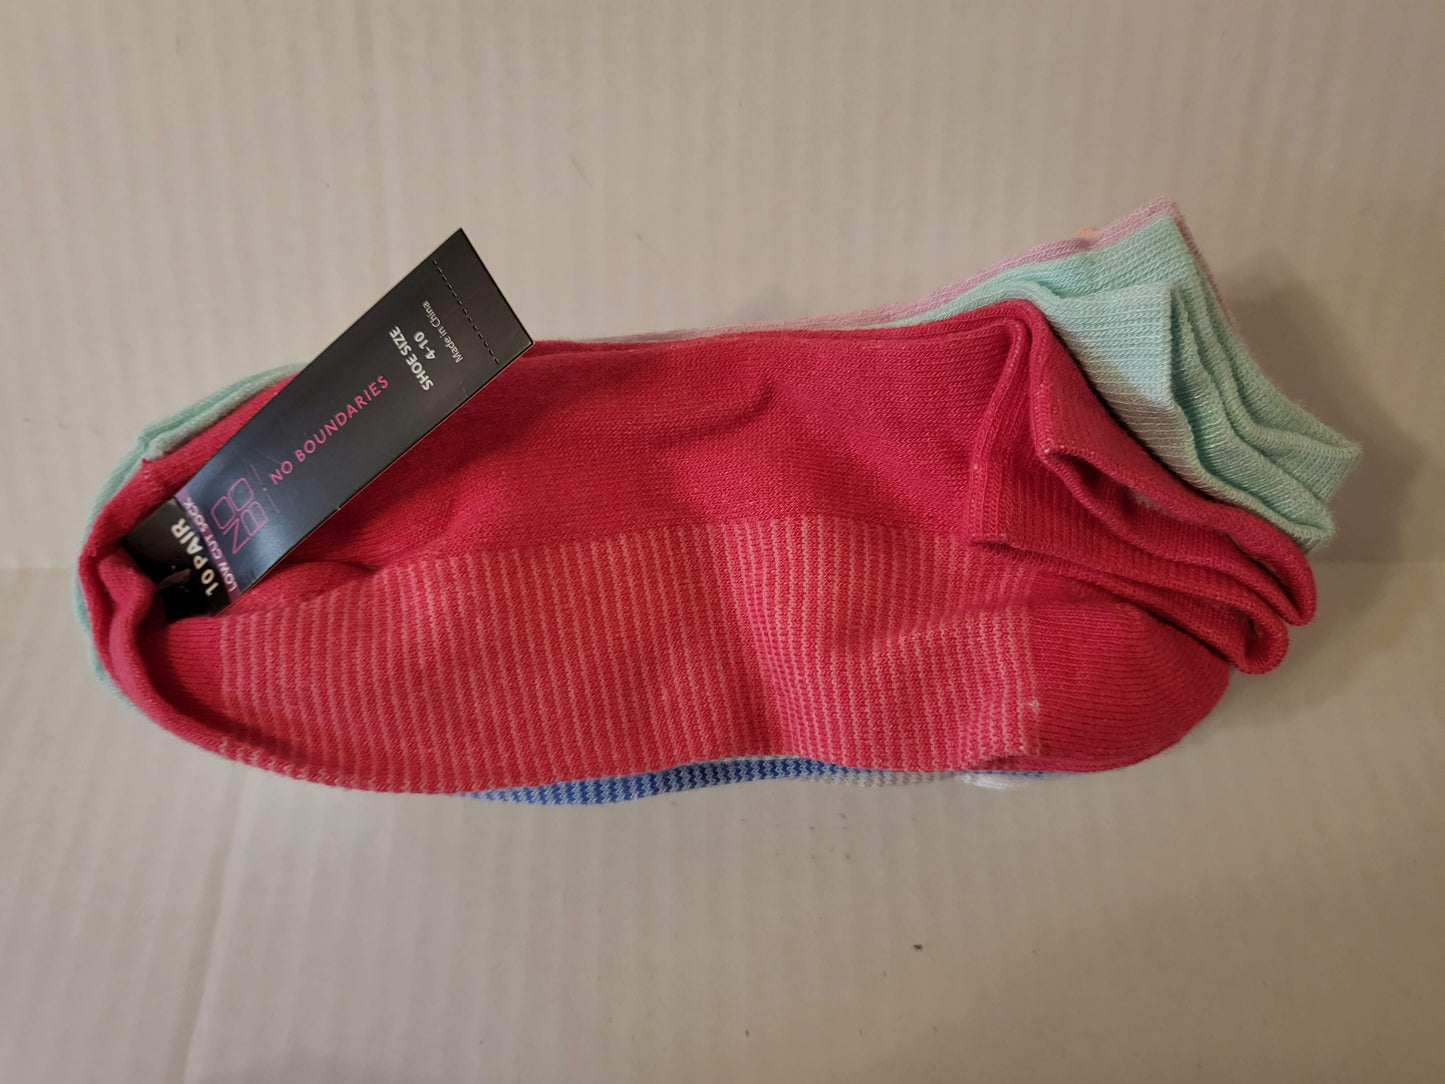 10 Pair Packs of No Boundaries Low Cut Socks in 16 Different Sock Designs